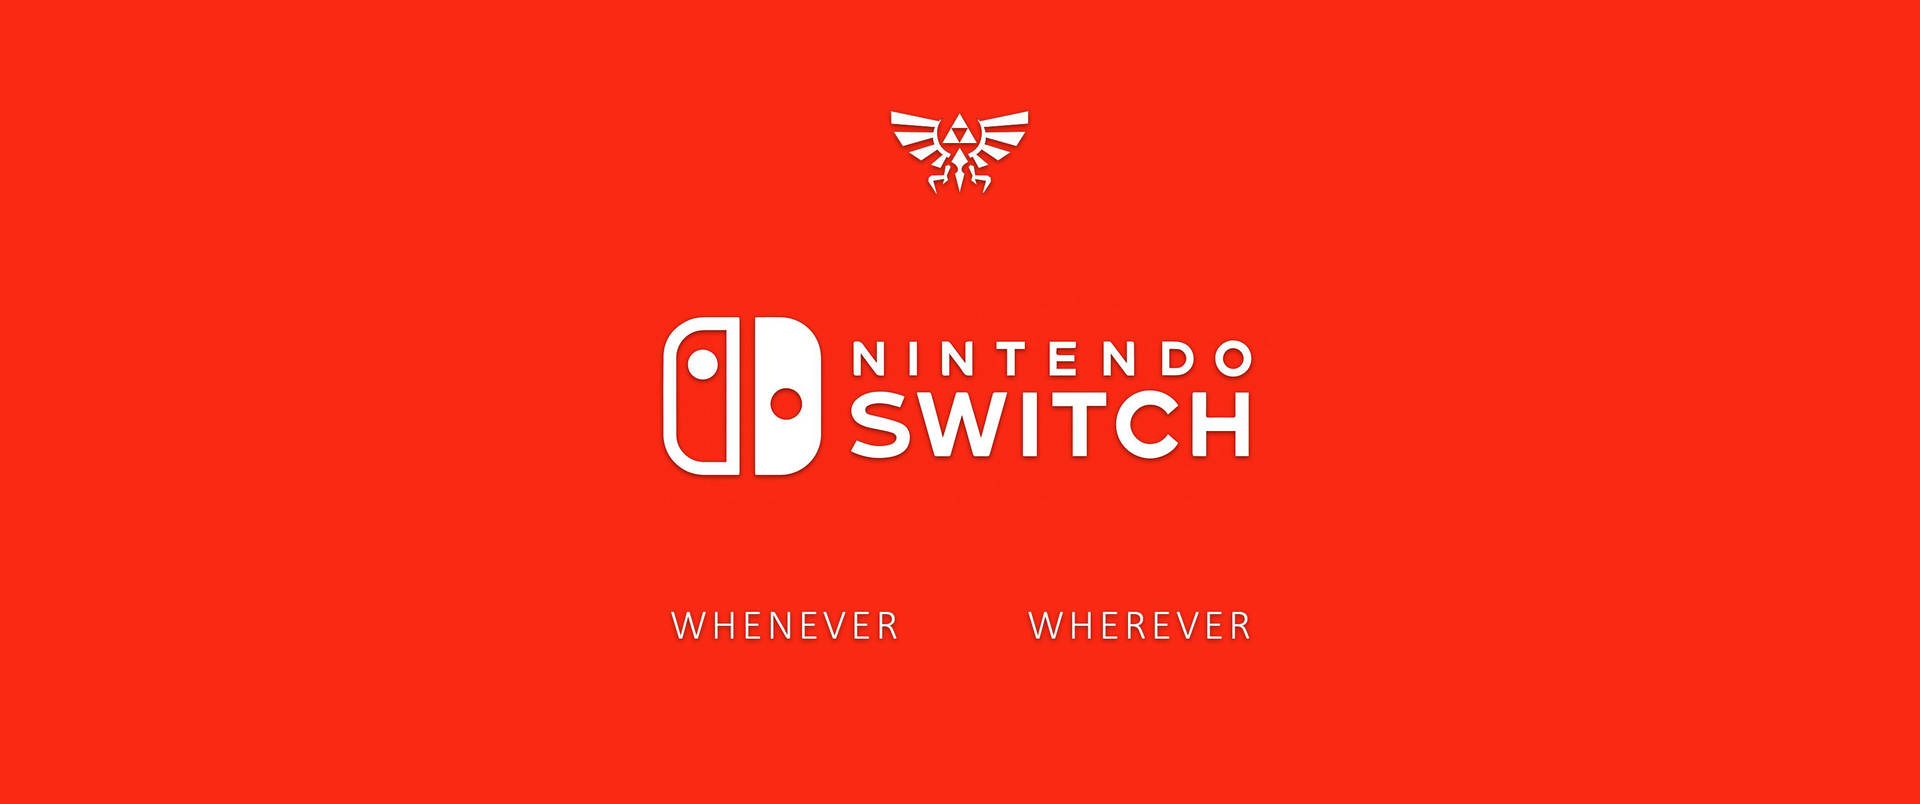 Nintendo Switch Logo Altid og Overalt. Wallpaper